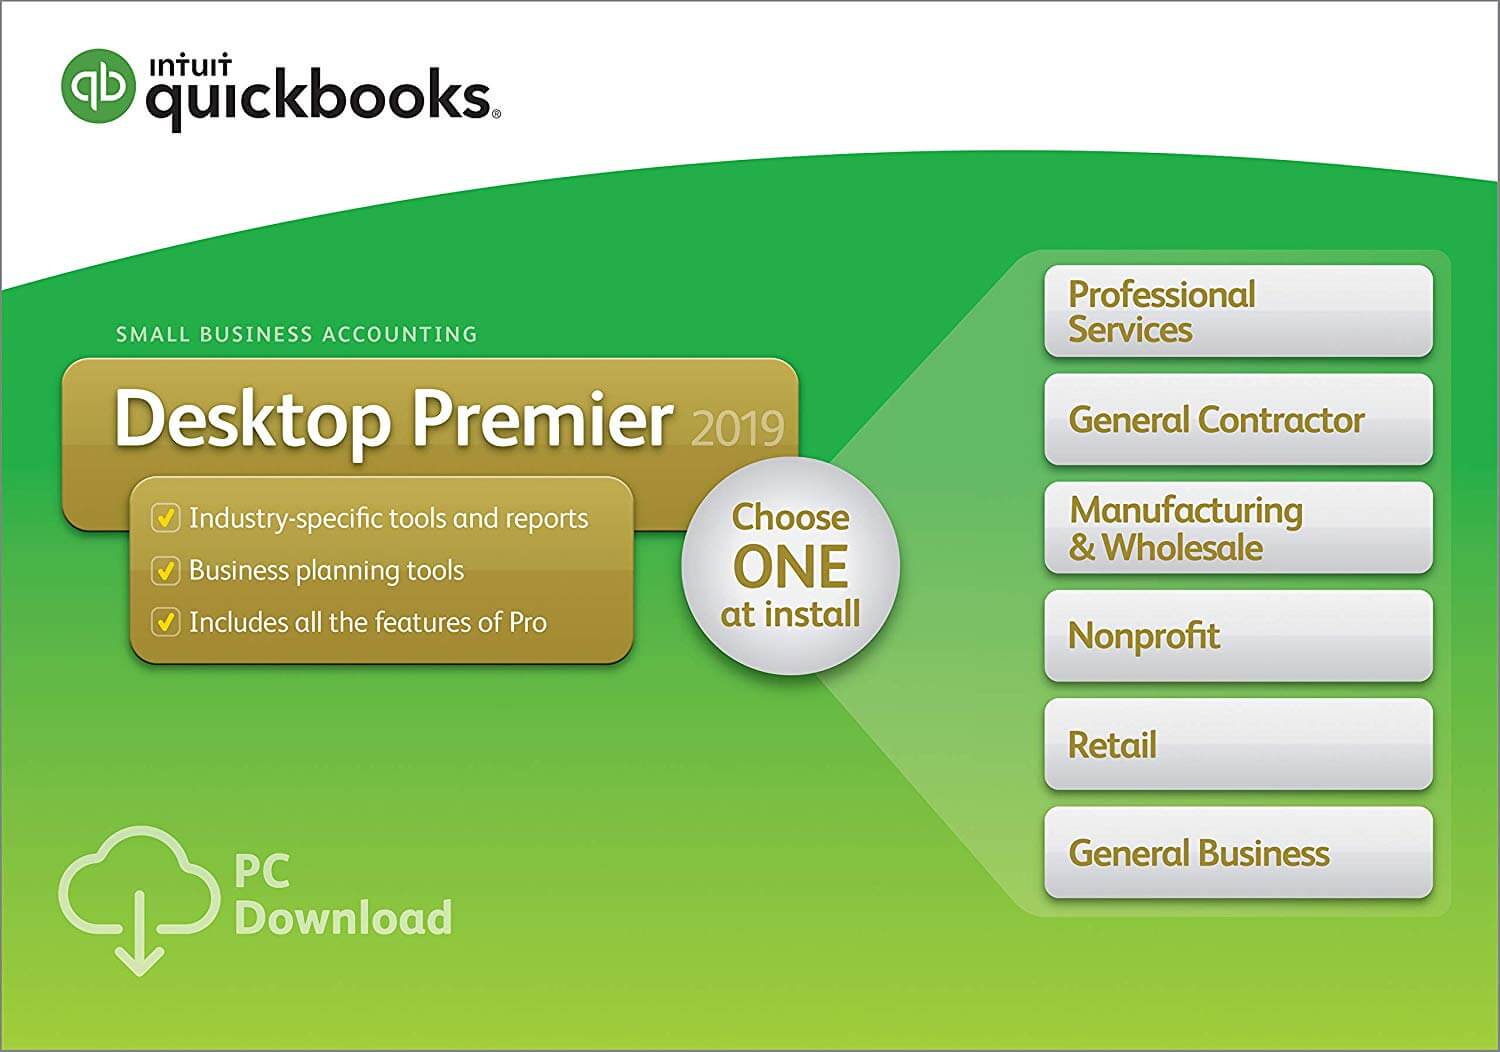 quickbooks for nonprofit mac